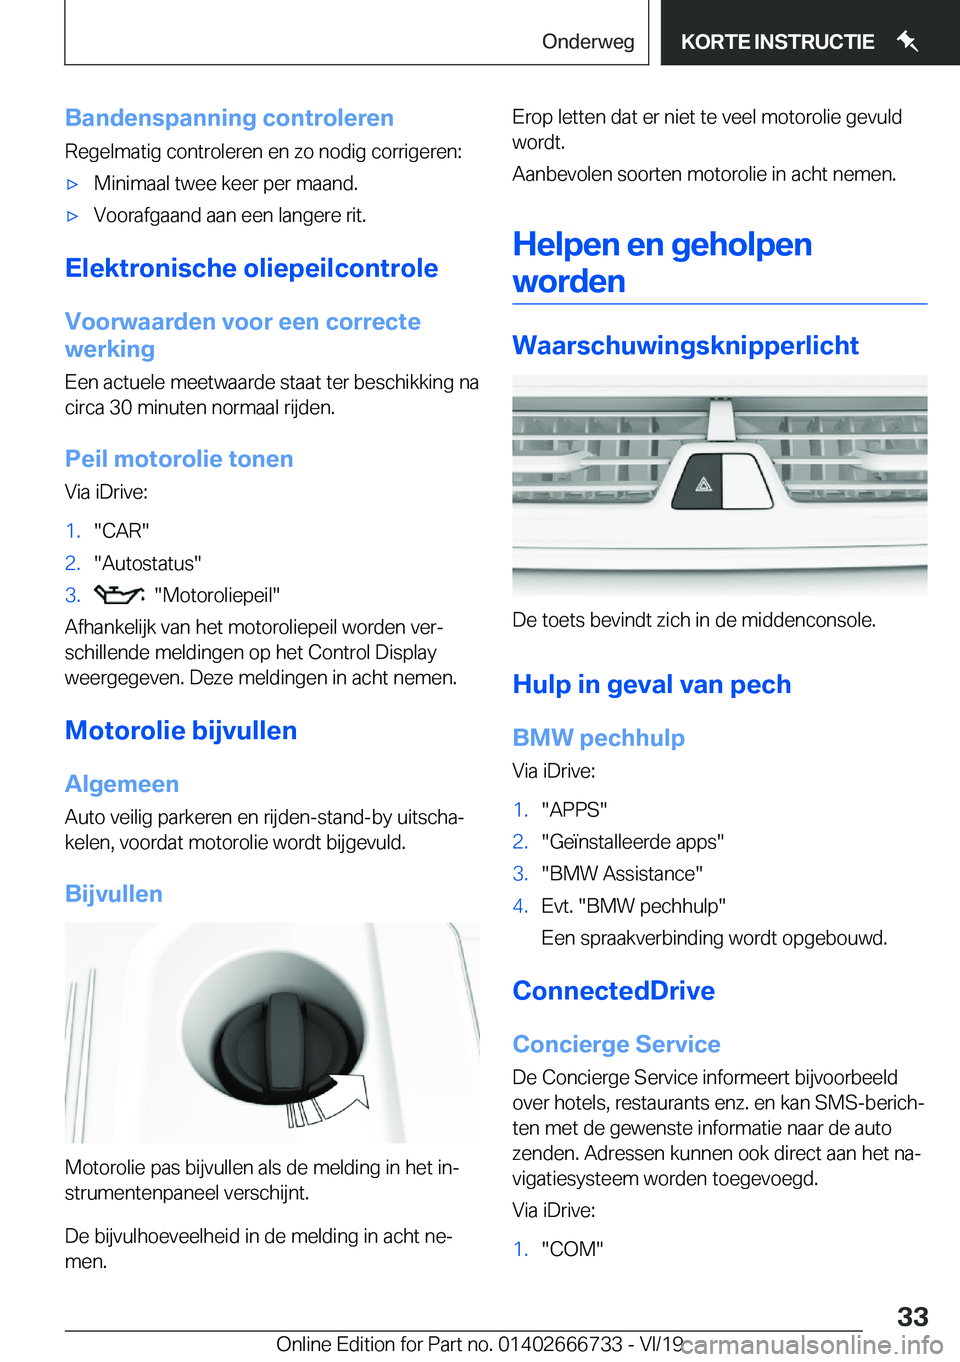 BMW M5 2020  Instructieboekjes (in Dutch) �B�a�n�d�e�n�s�p�a�n�n�i�n�g��c�o�n�t�r�o�l�e�r�e�n
�R�e�g�e�l�m�a�t�i�g��c�o�n�t�r�o�l�e�r�e�n��e�n��z�o��n�o�d�i�g��c�o�r�r�i�g�e�r�e�n�:'x�M�i�n�i�m�a�a�l��t�w�e�e��k�e�e�r��p�e�r��m�